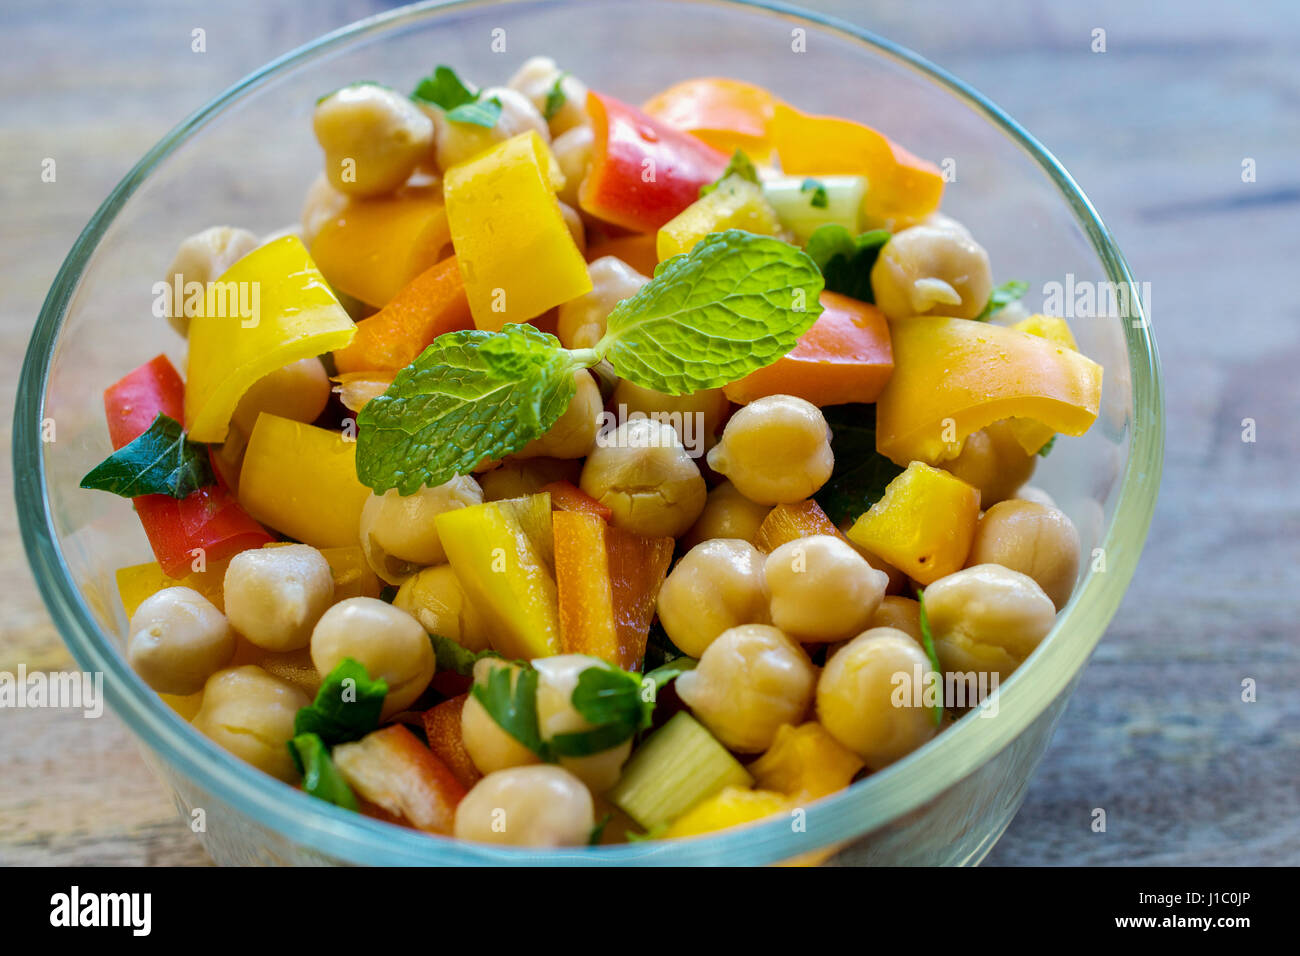 Gros plan sur salade de pois chiches dans un bol en verre transparent- concept de saine alimentation Banque D'Images